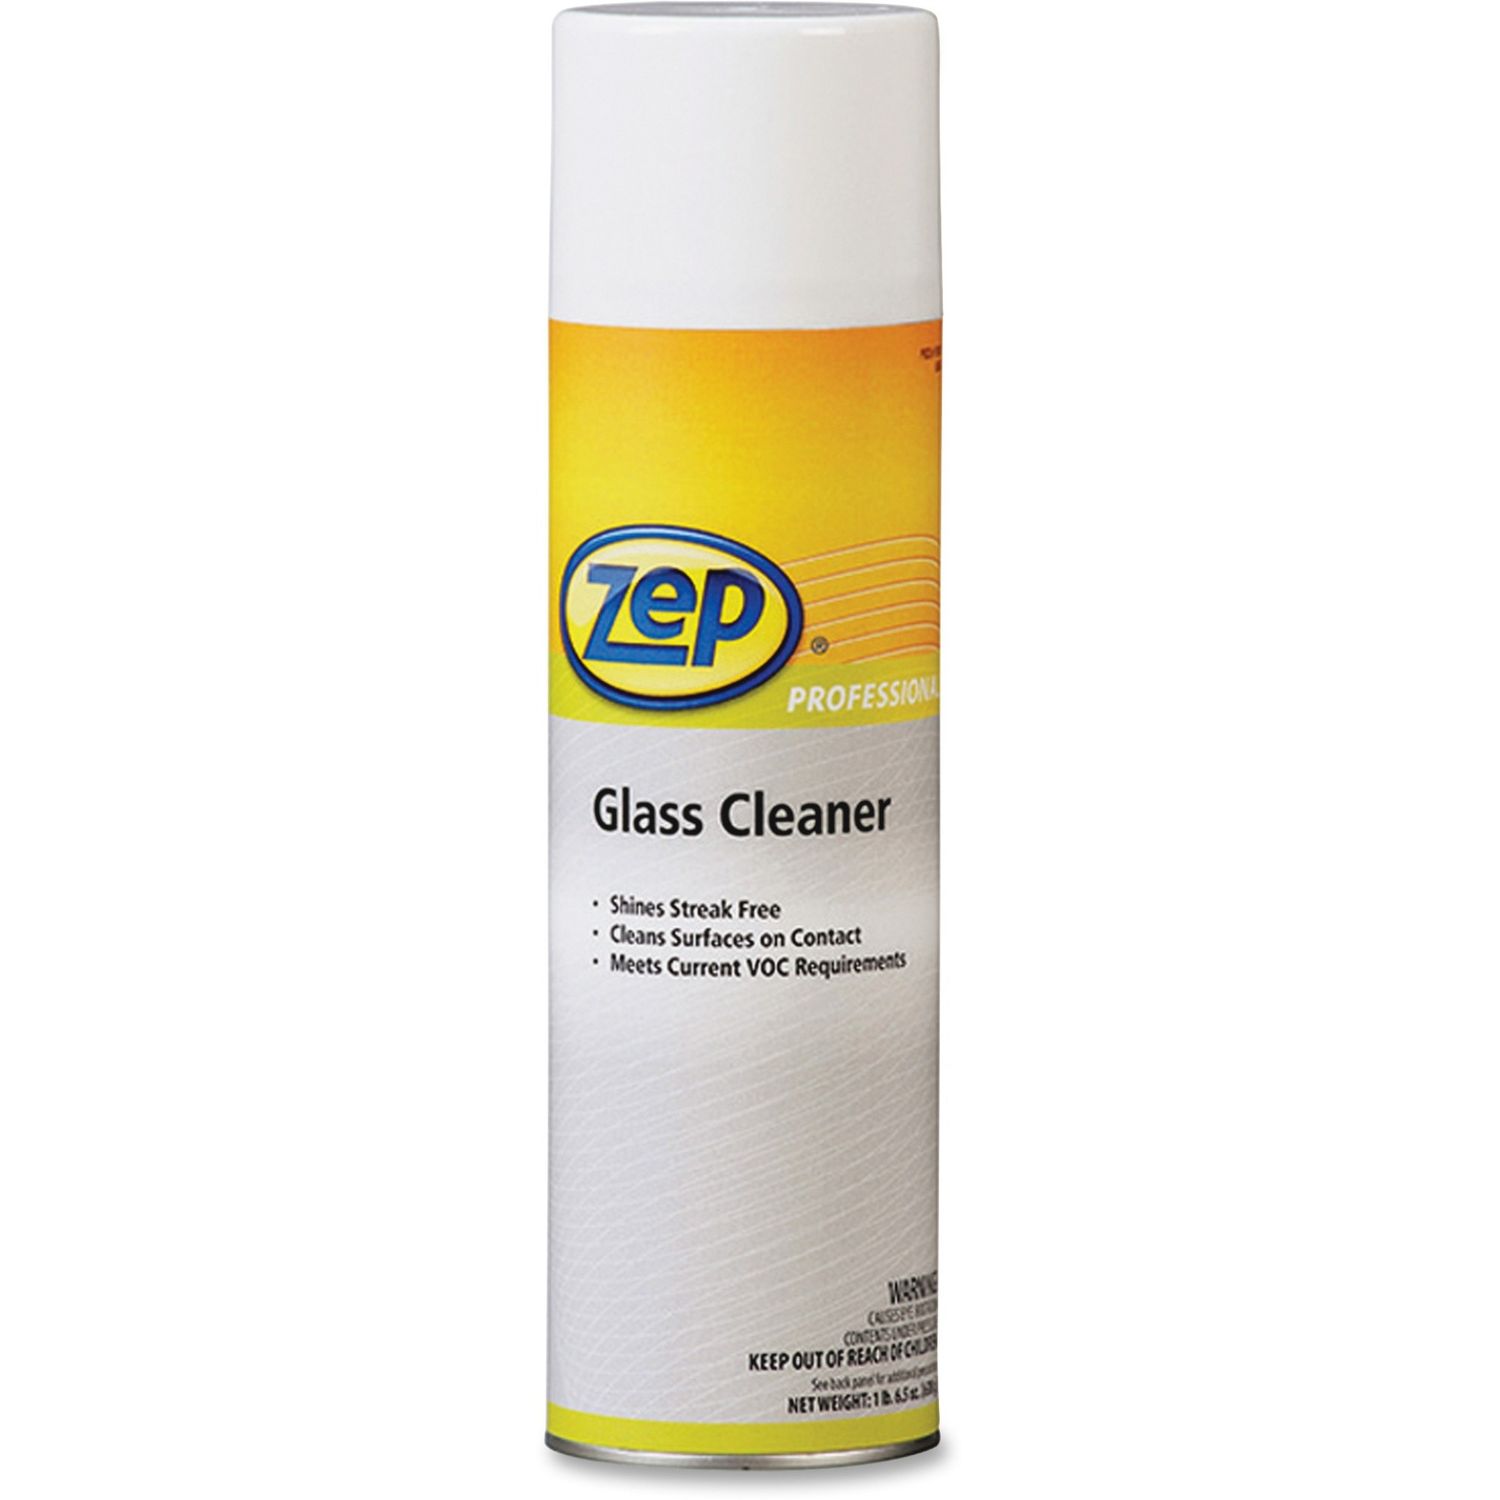 Glass Cleaner Ready-To-Use Aerosol, 24 fl oz (0.8 quart), 1 Each, Clear